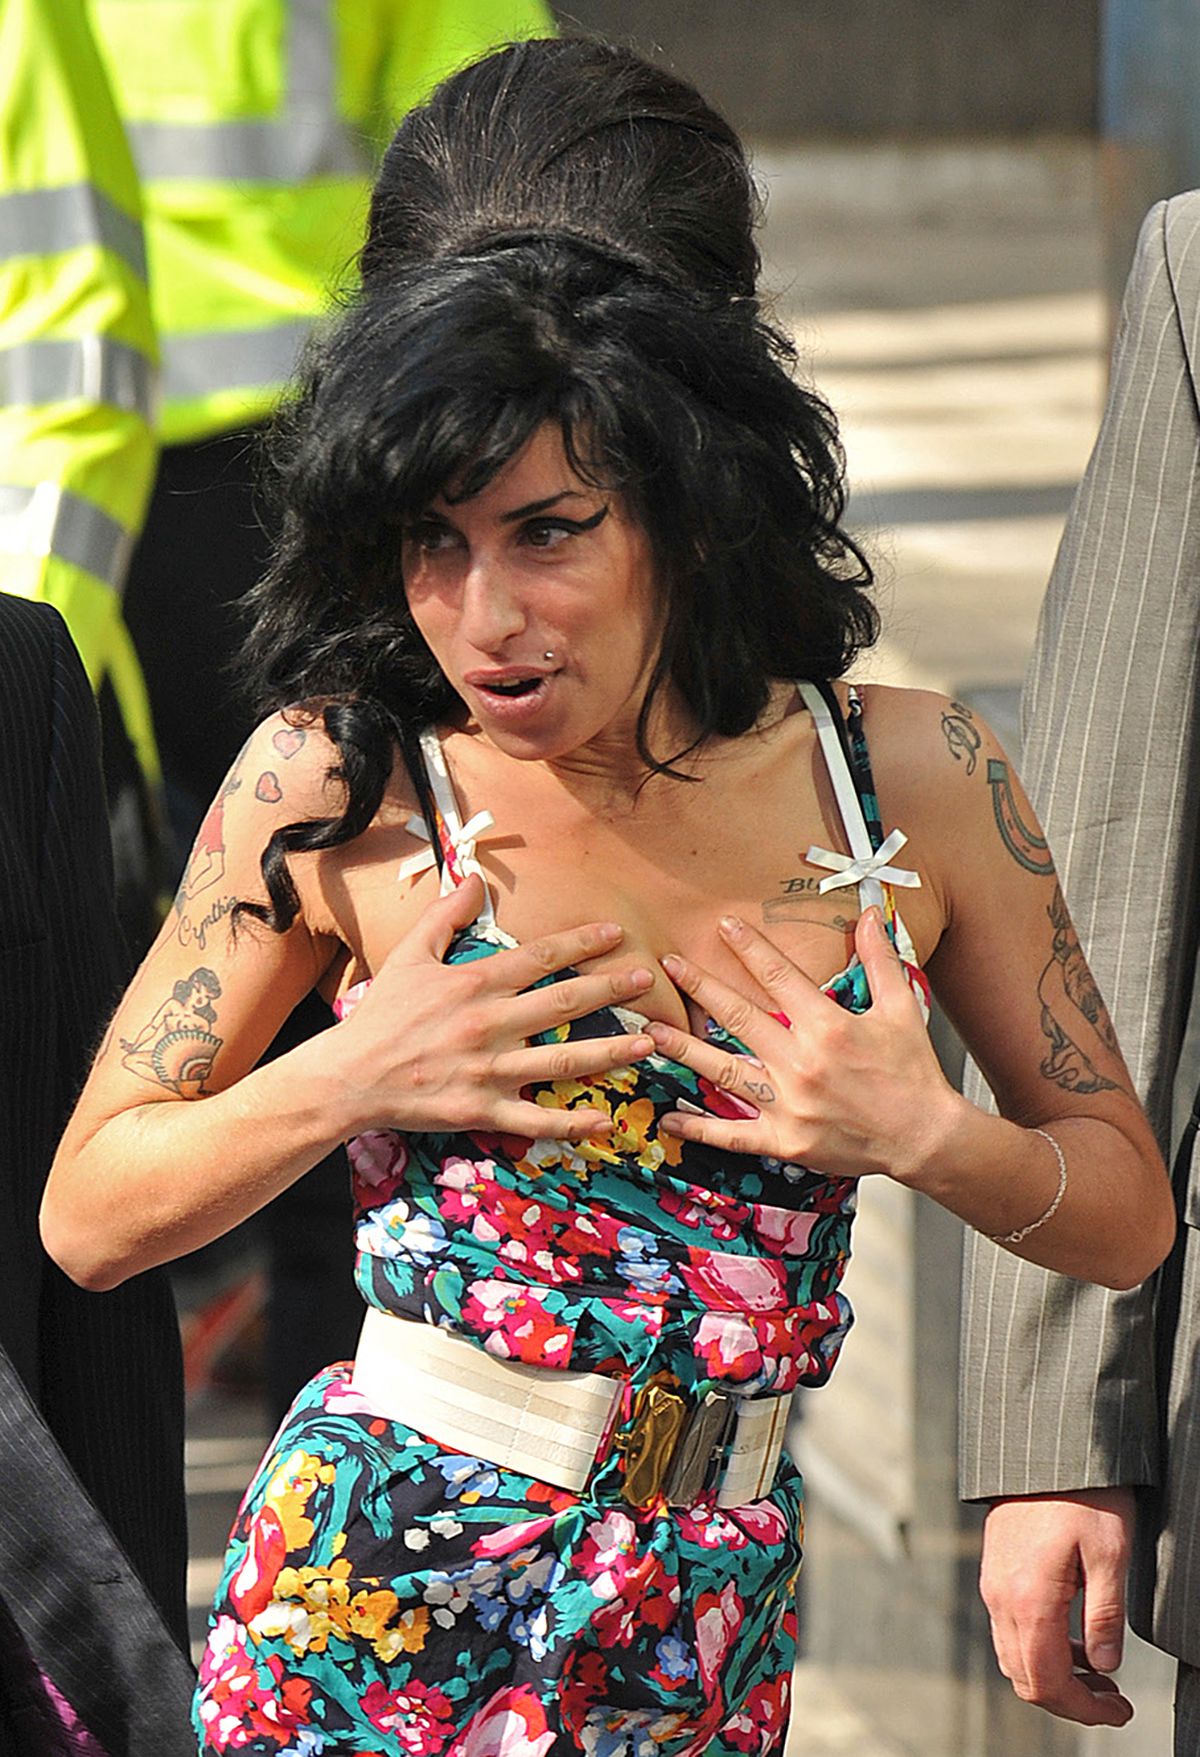 9 najboljih kombinacija košnica i oka za oči Amy Winehouse